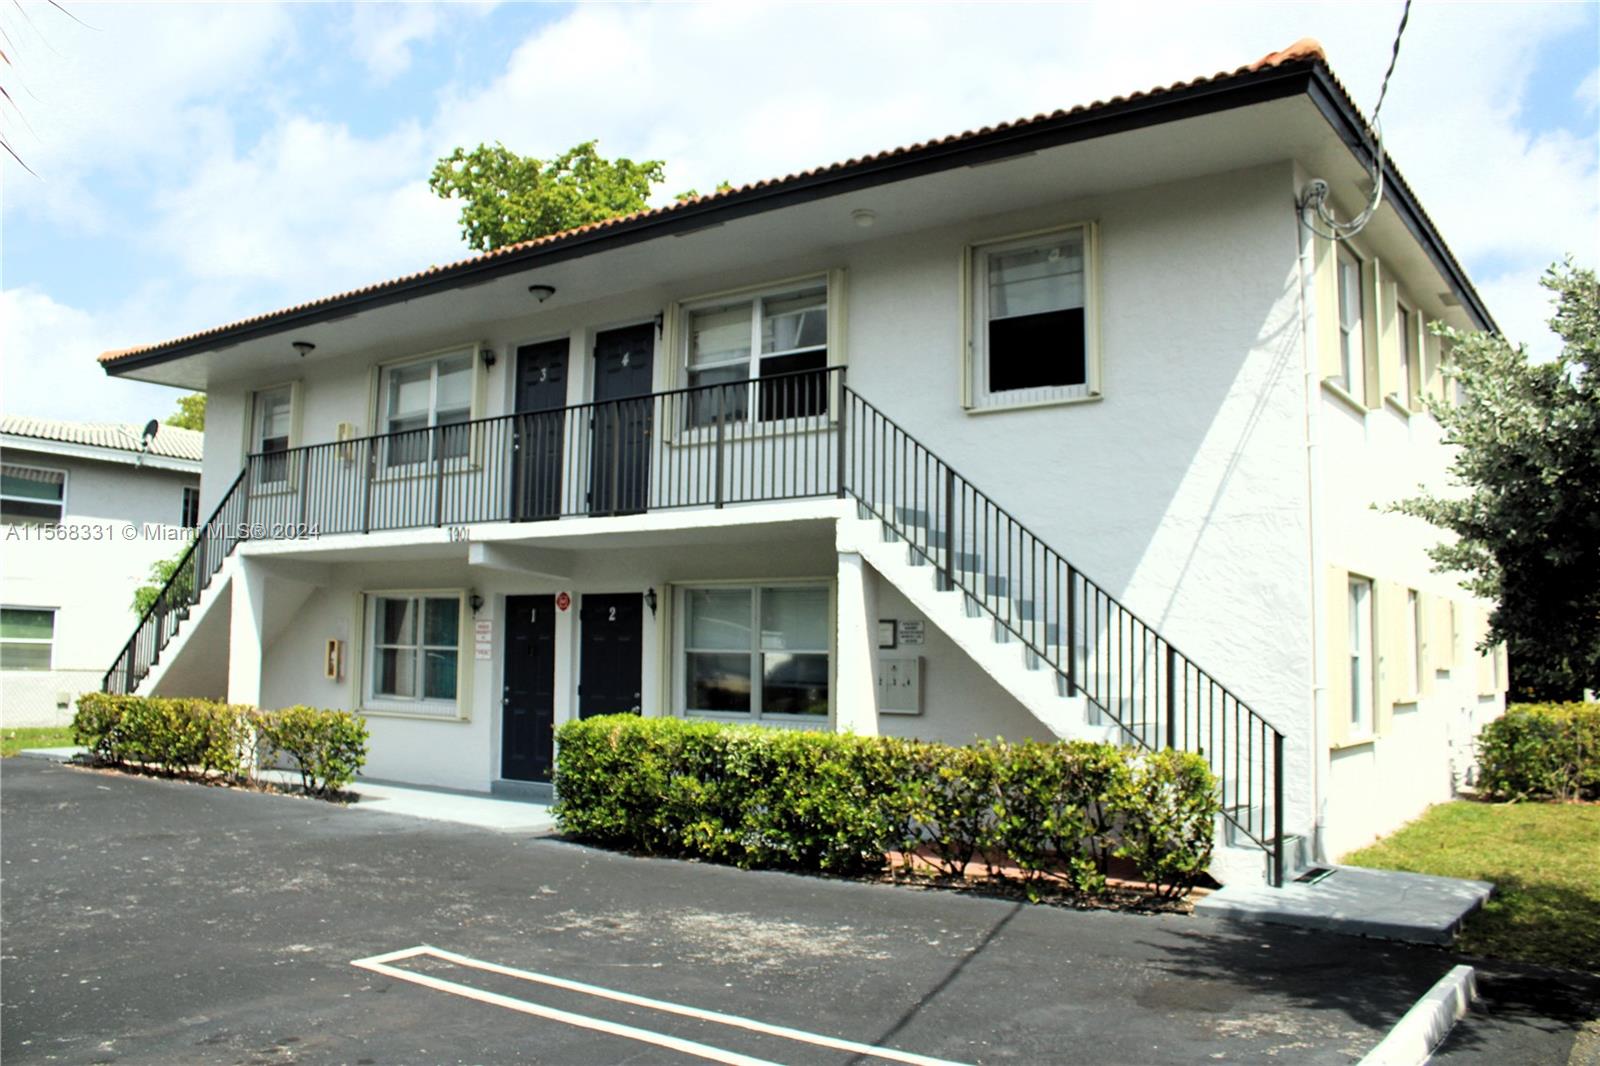 Rental Property at 7901 Nw 44th Ct, Coral Springs, Broward County, Florida -  - $1,200,000 MO.